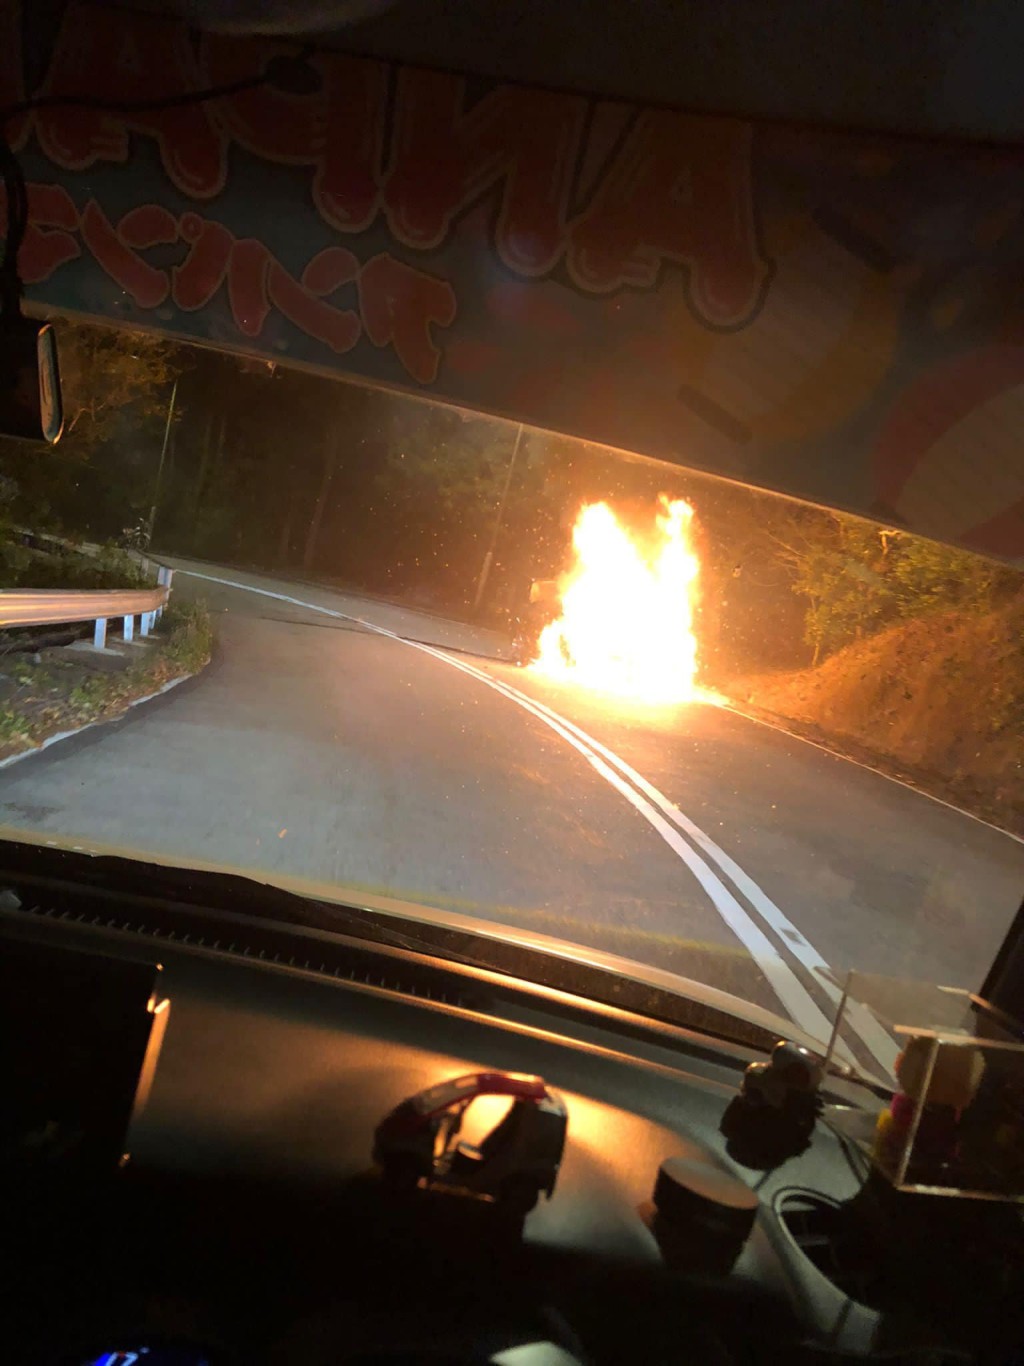 未幾私家車陷入火海，烈焰衝天。馬路的事 (即時交通資訊台)FB